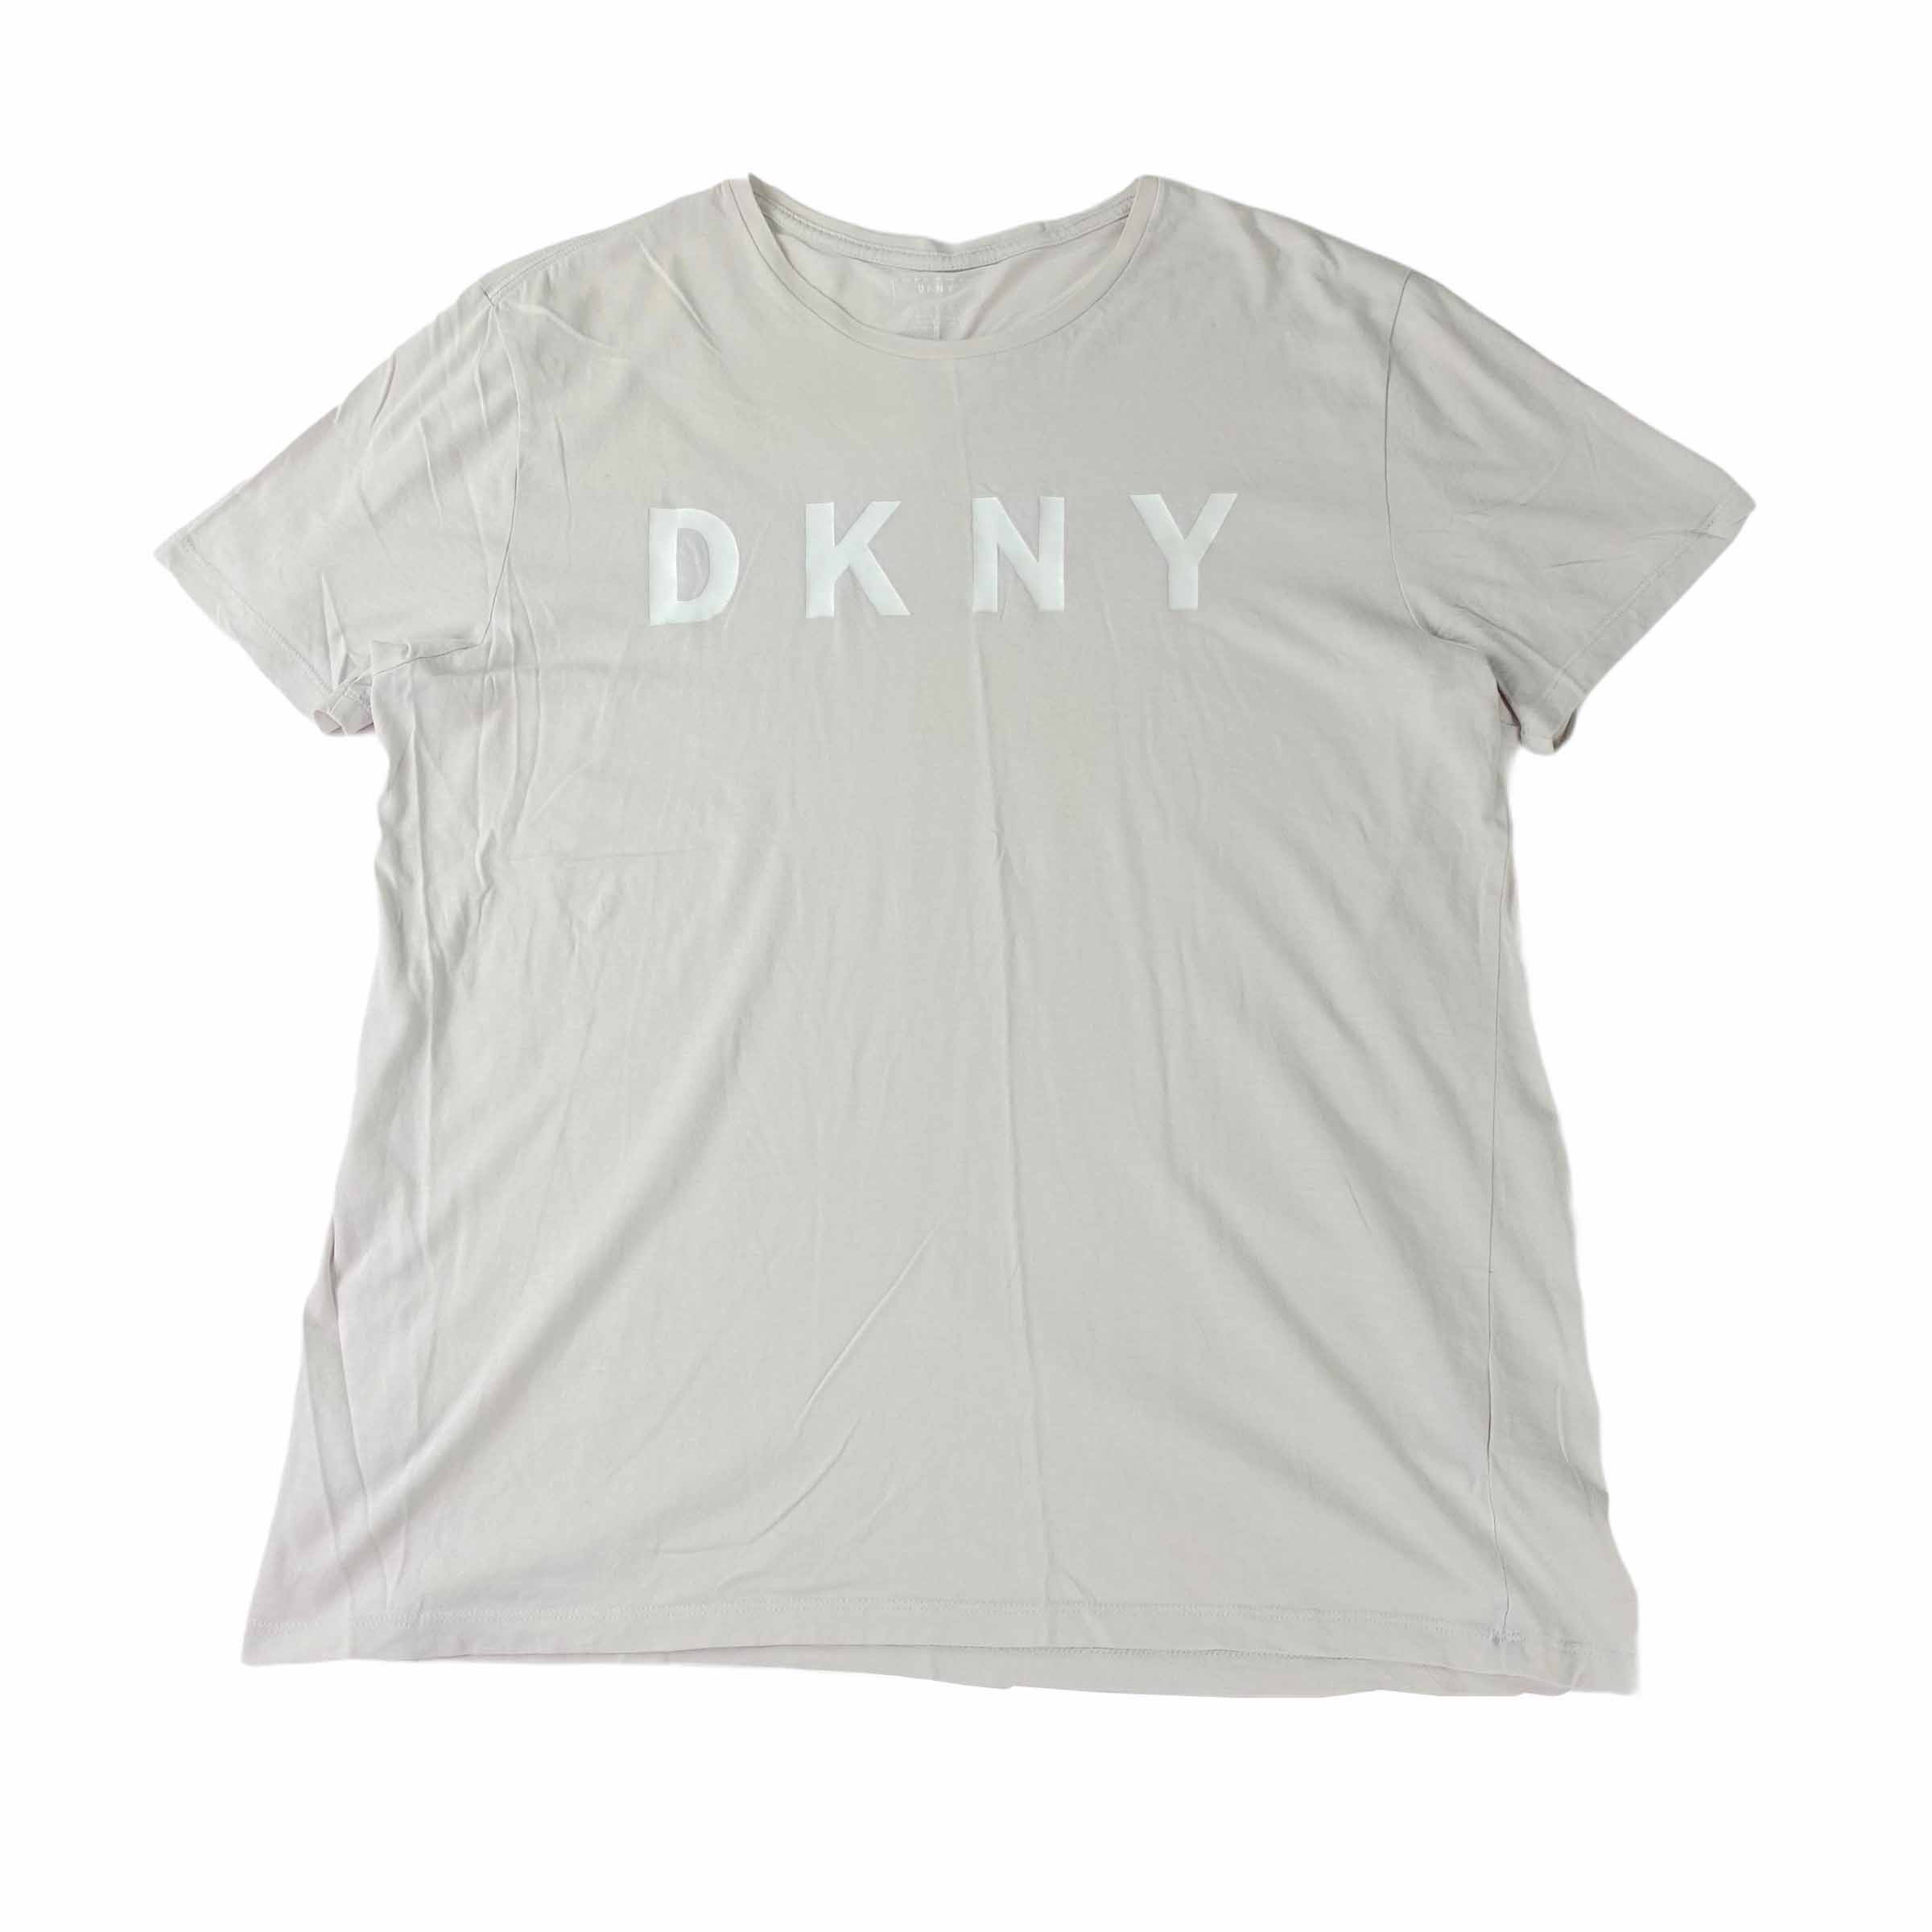 [DKNY] Grey Tshirt - Size L